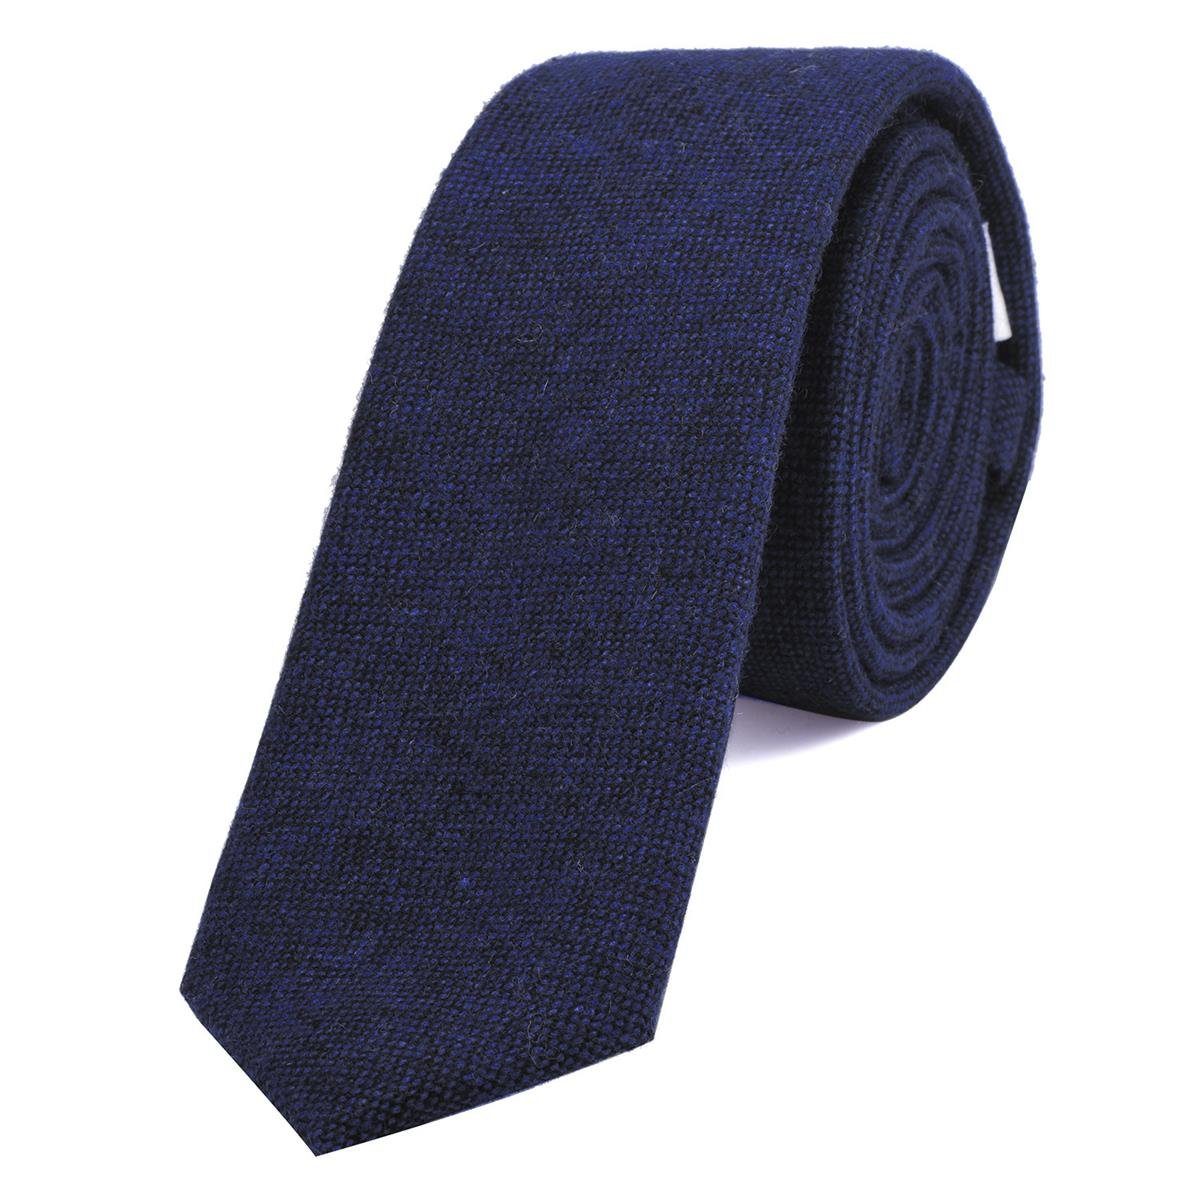 DonDon Krawatte Herren Krawatte 6 cm einfarbig kariert und gepunkt (Packung, 1-St., 1x Krawatte) Baumwolle, verschiedene Muster, für Büro oder festliche Veranstaltungen dunkelblau-schwarz